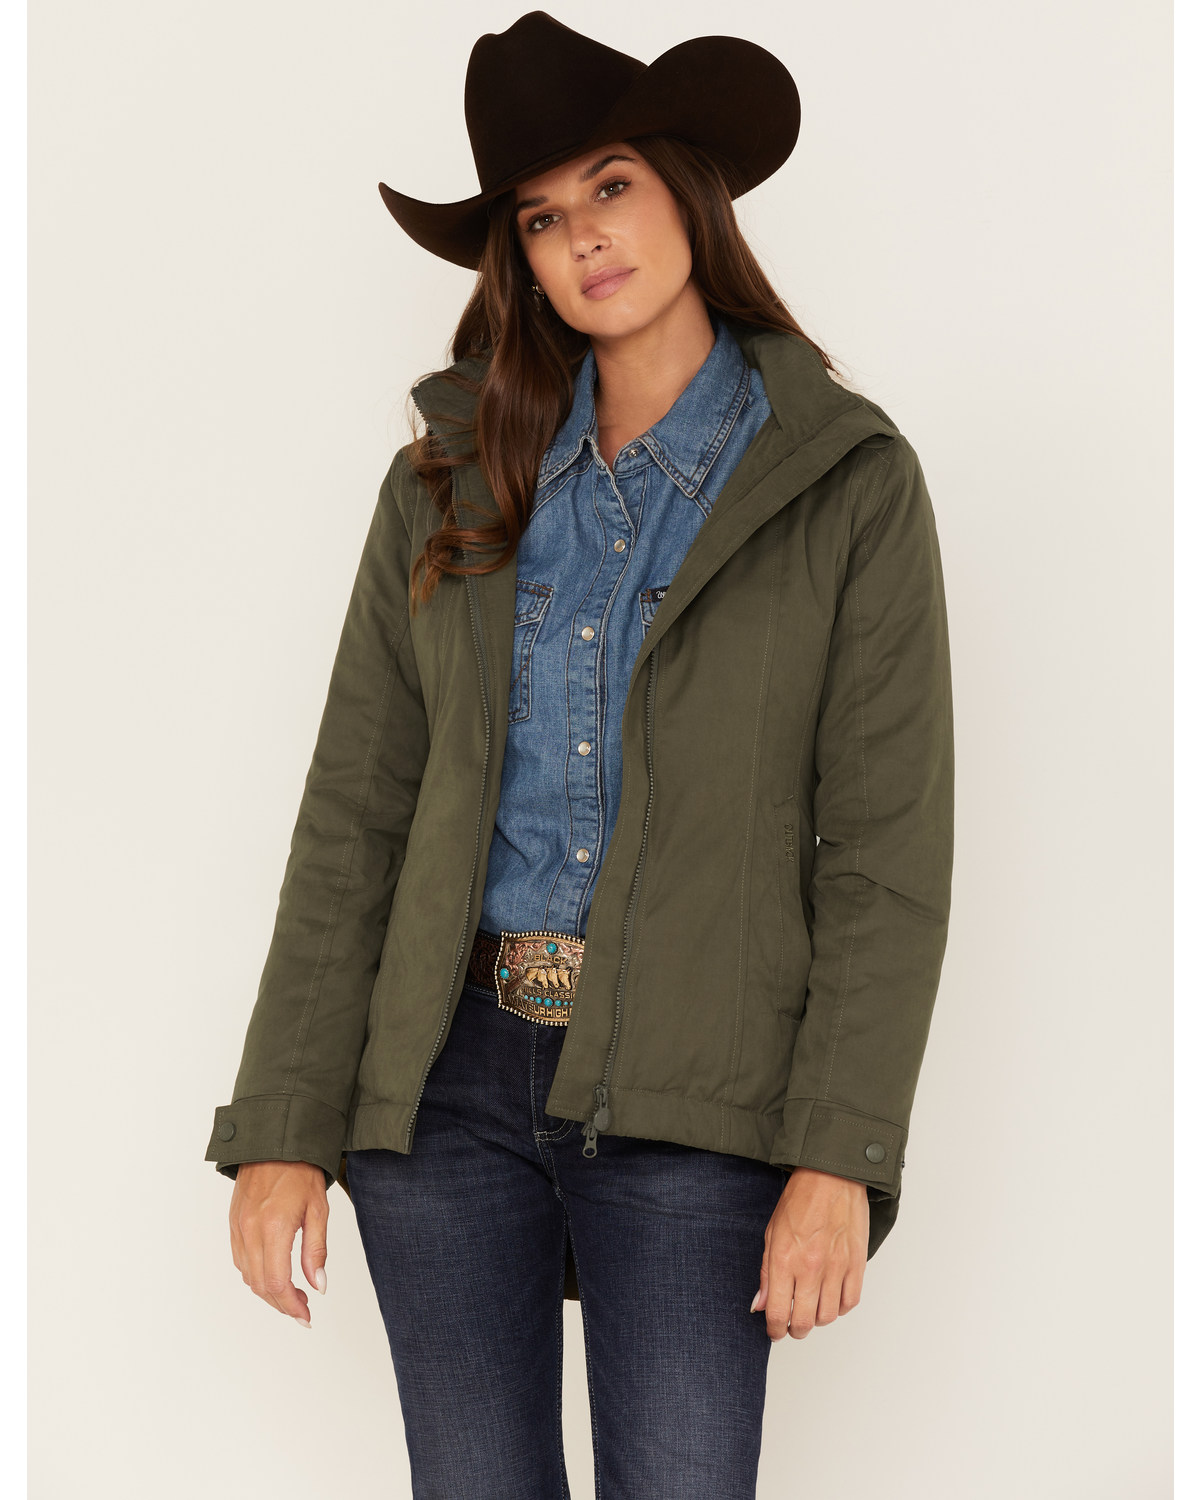 Outback Trading Co Women's Hattie Jacket